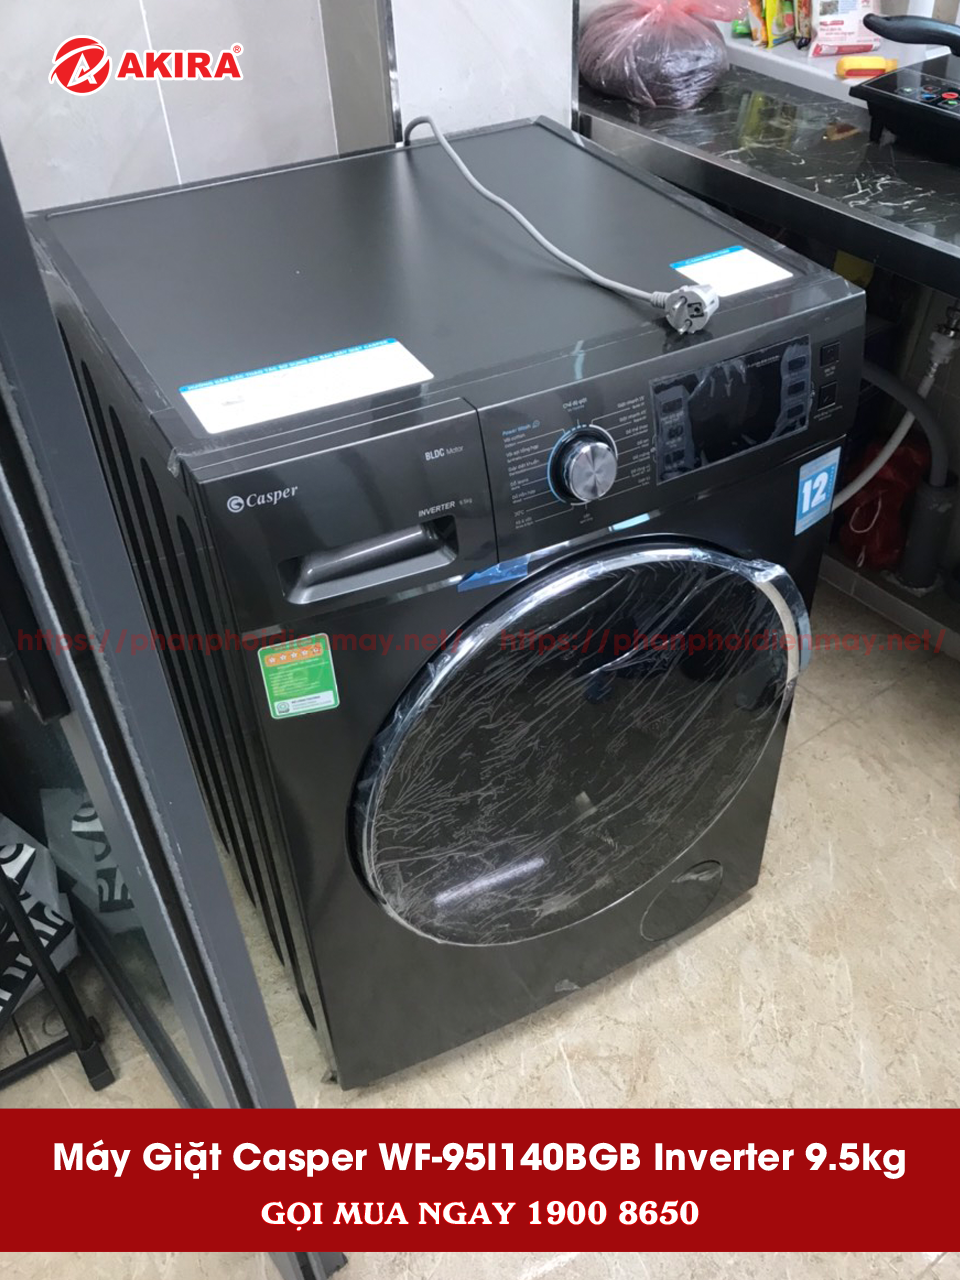 Hình ảnh thực tế máy giặt Casper WF-95I140BGB